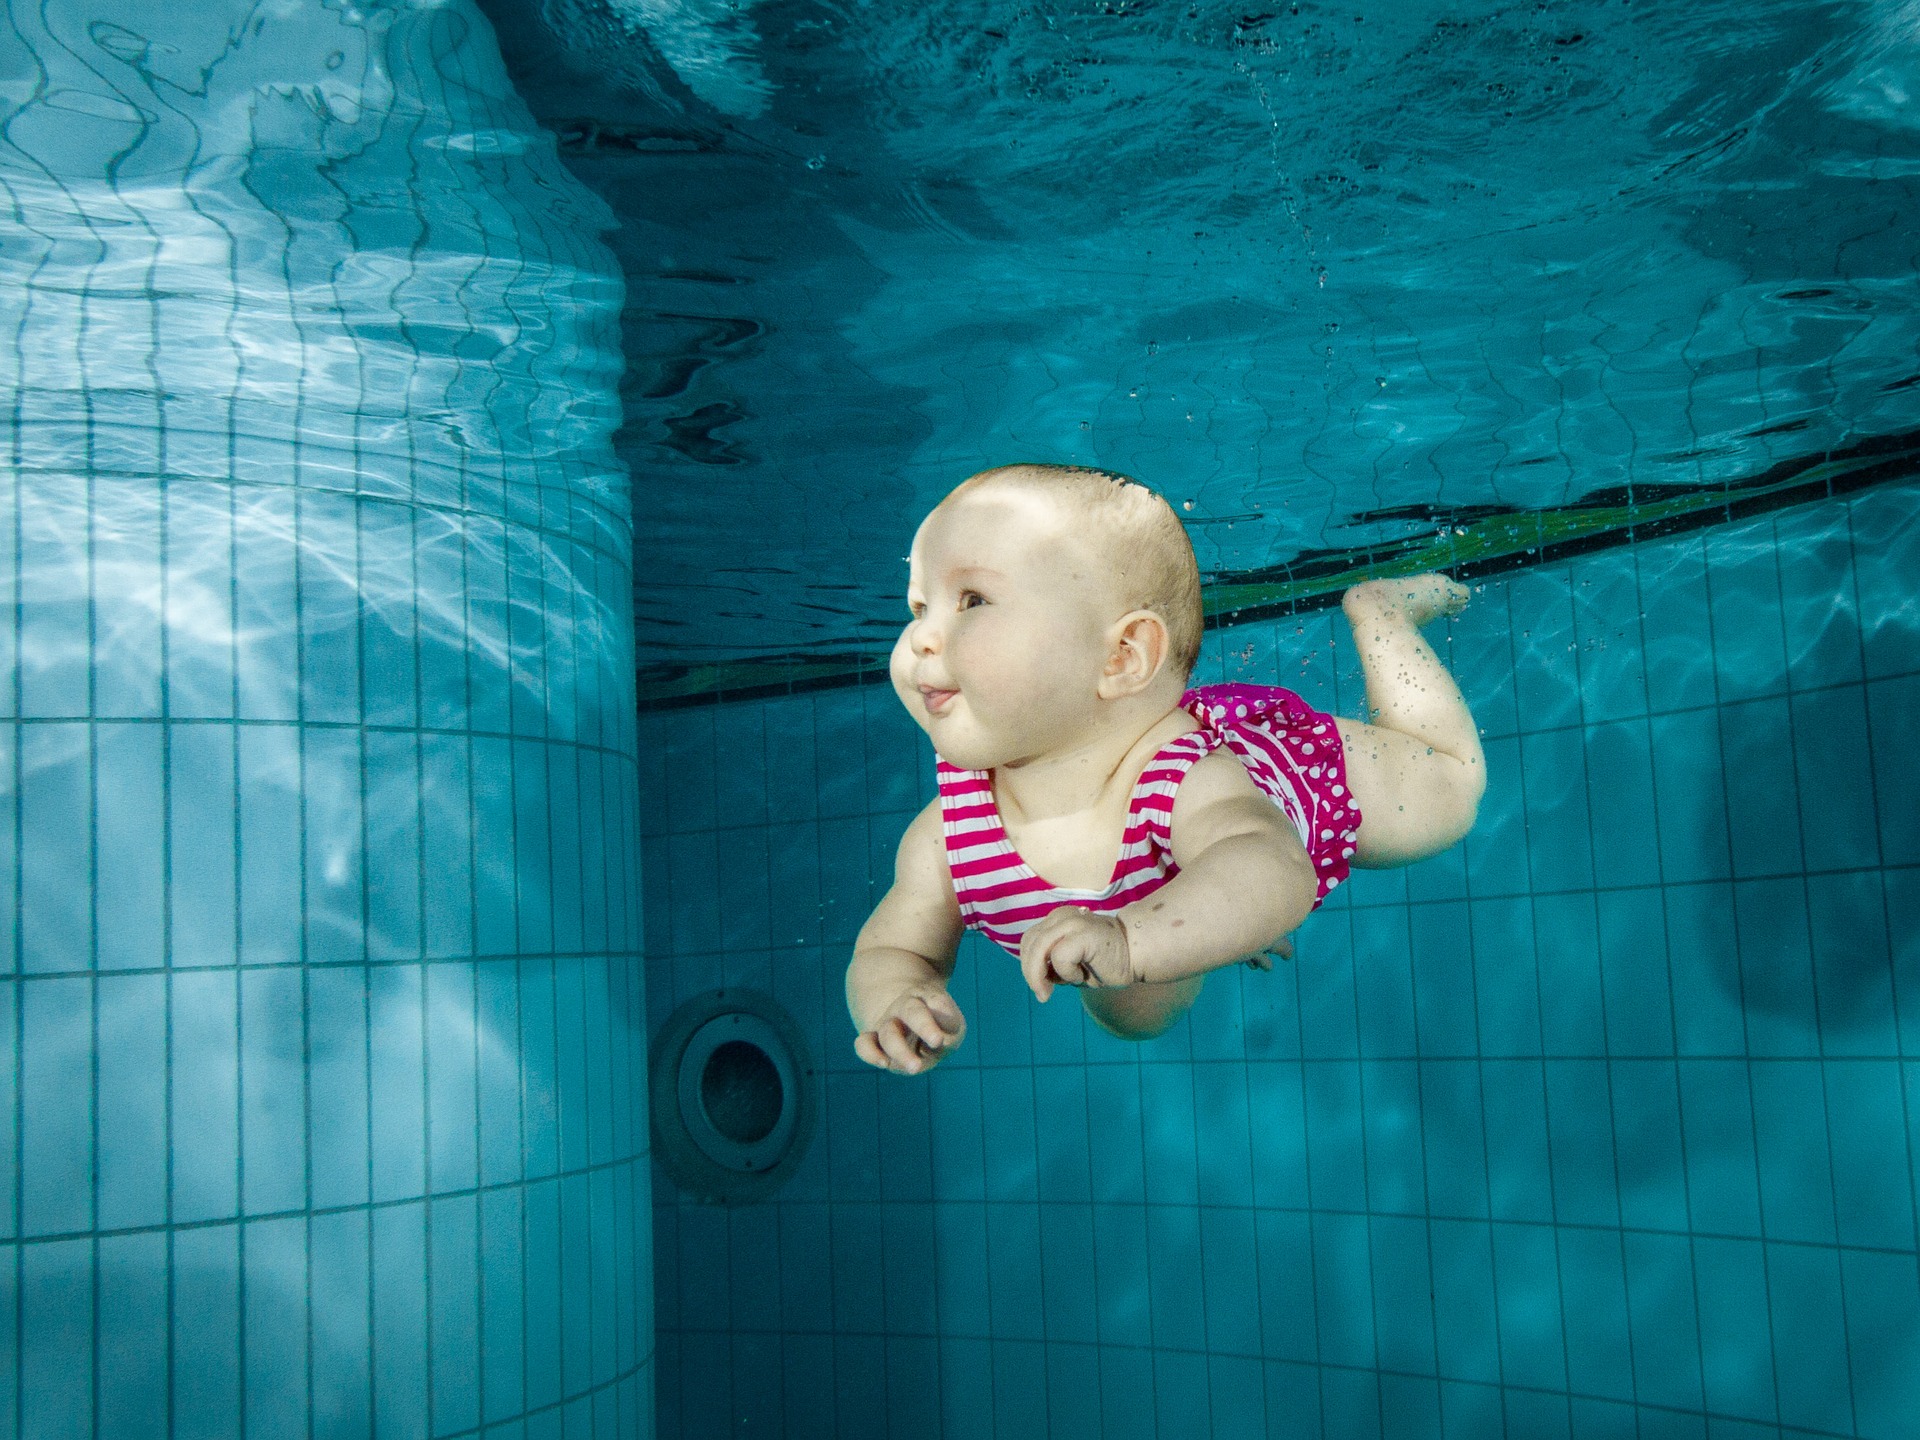 alt="baby swimming under water"